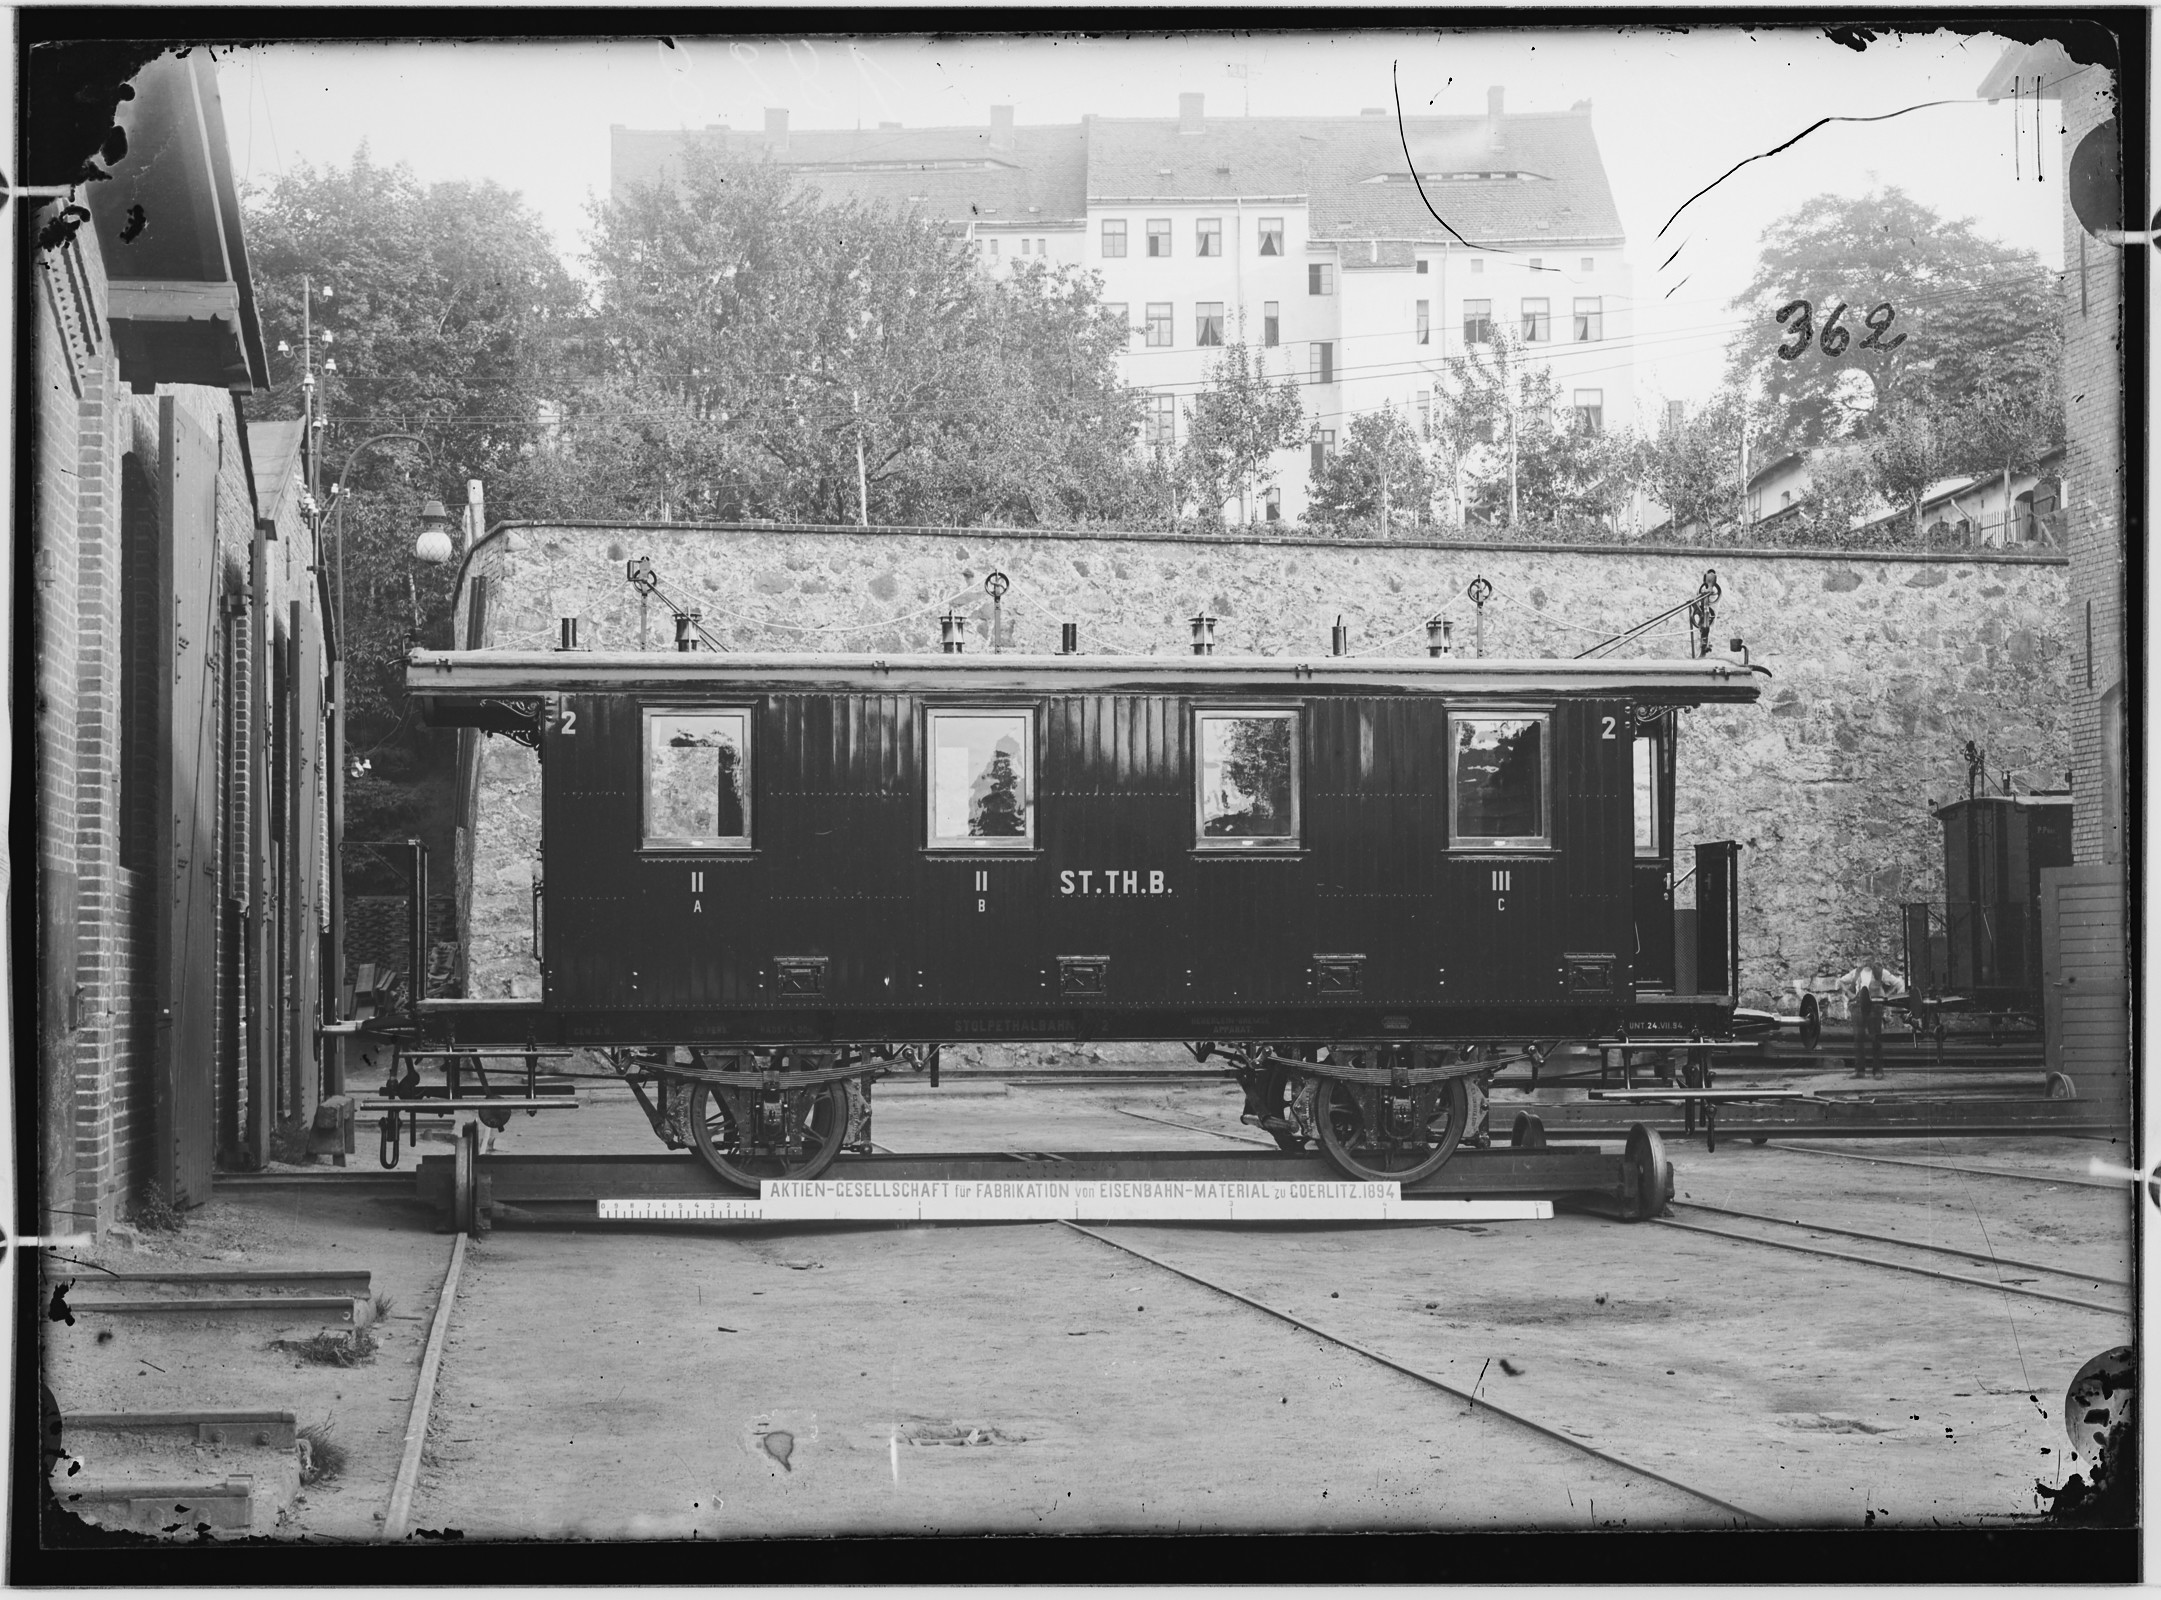 Fotografie: zweiachsiger Kleinbahn-Personenwagen zweite und dritte Klasse mit Gewichtbremse, 1894 (Schenkung der Bombardier Transportation, Werk Görlitz | Eigentum/Sammlung der Verkehrsmuseums Dresden gGmbH CC BY-NC-SA)